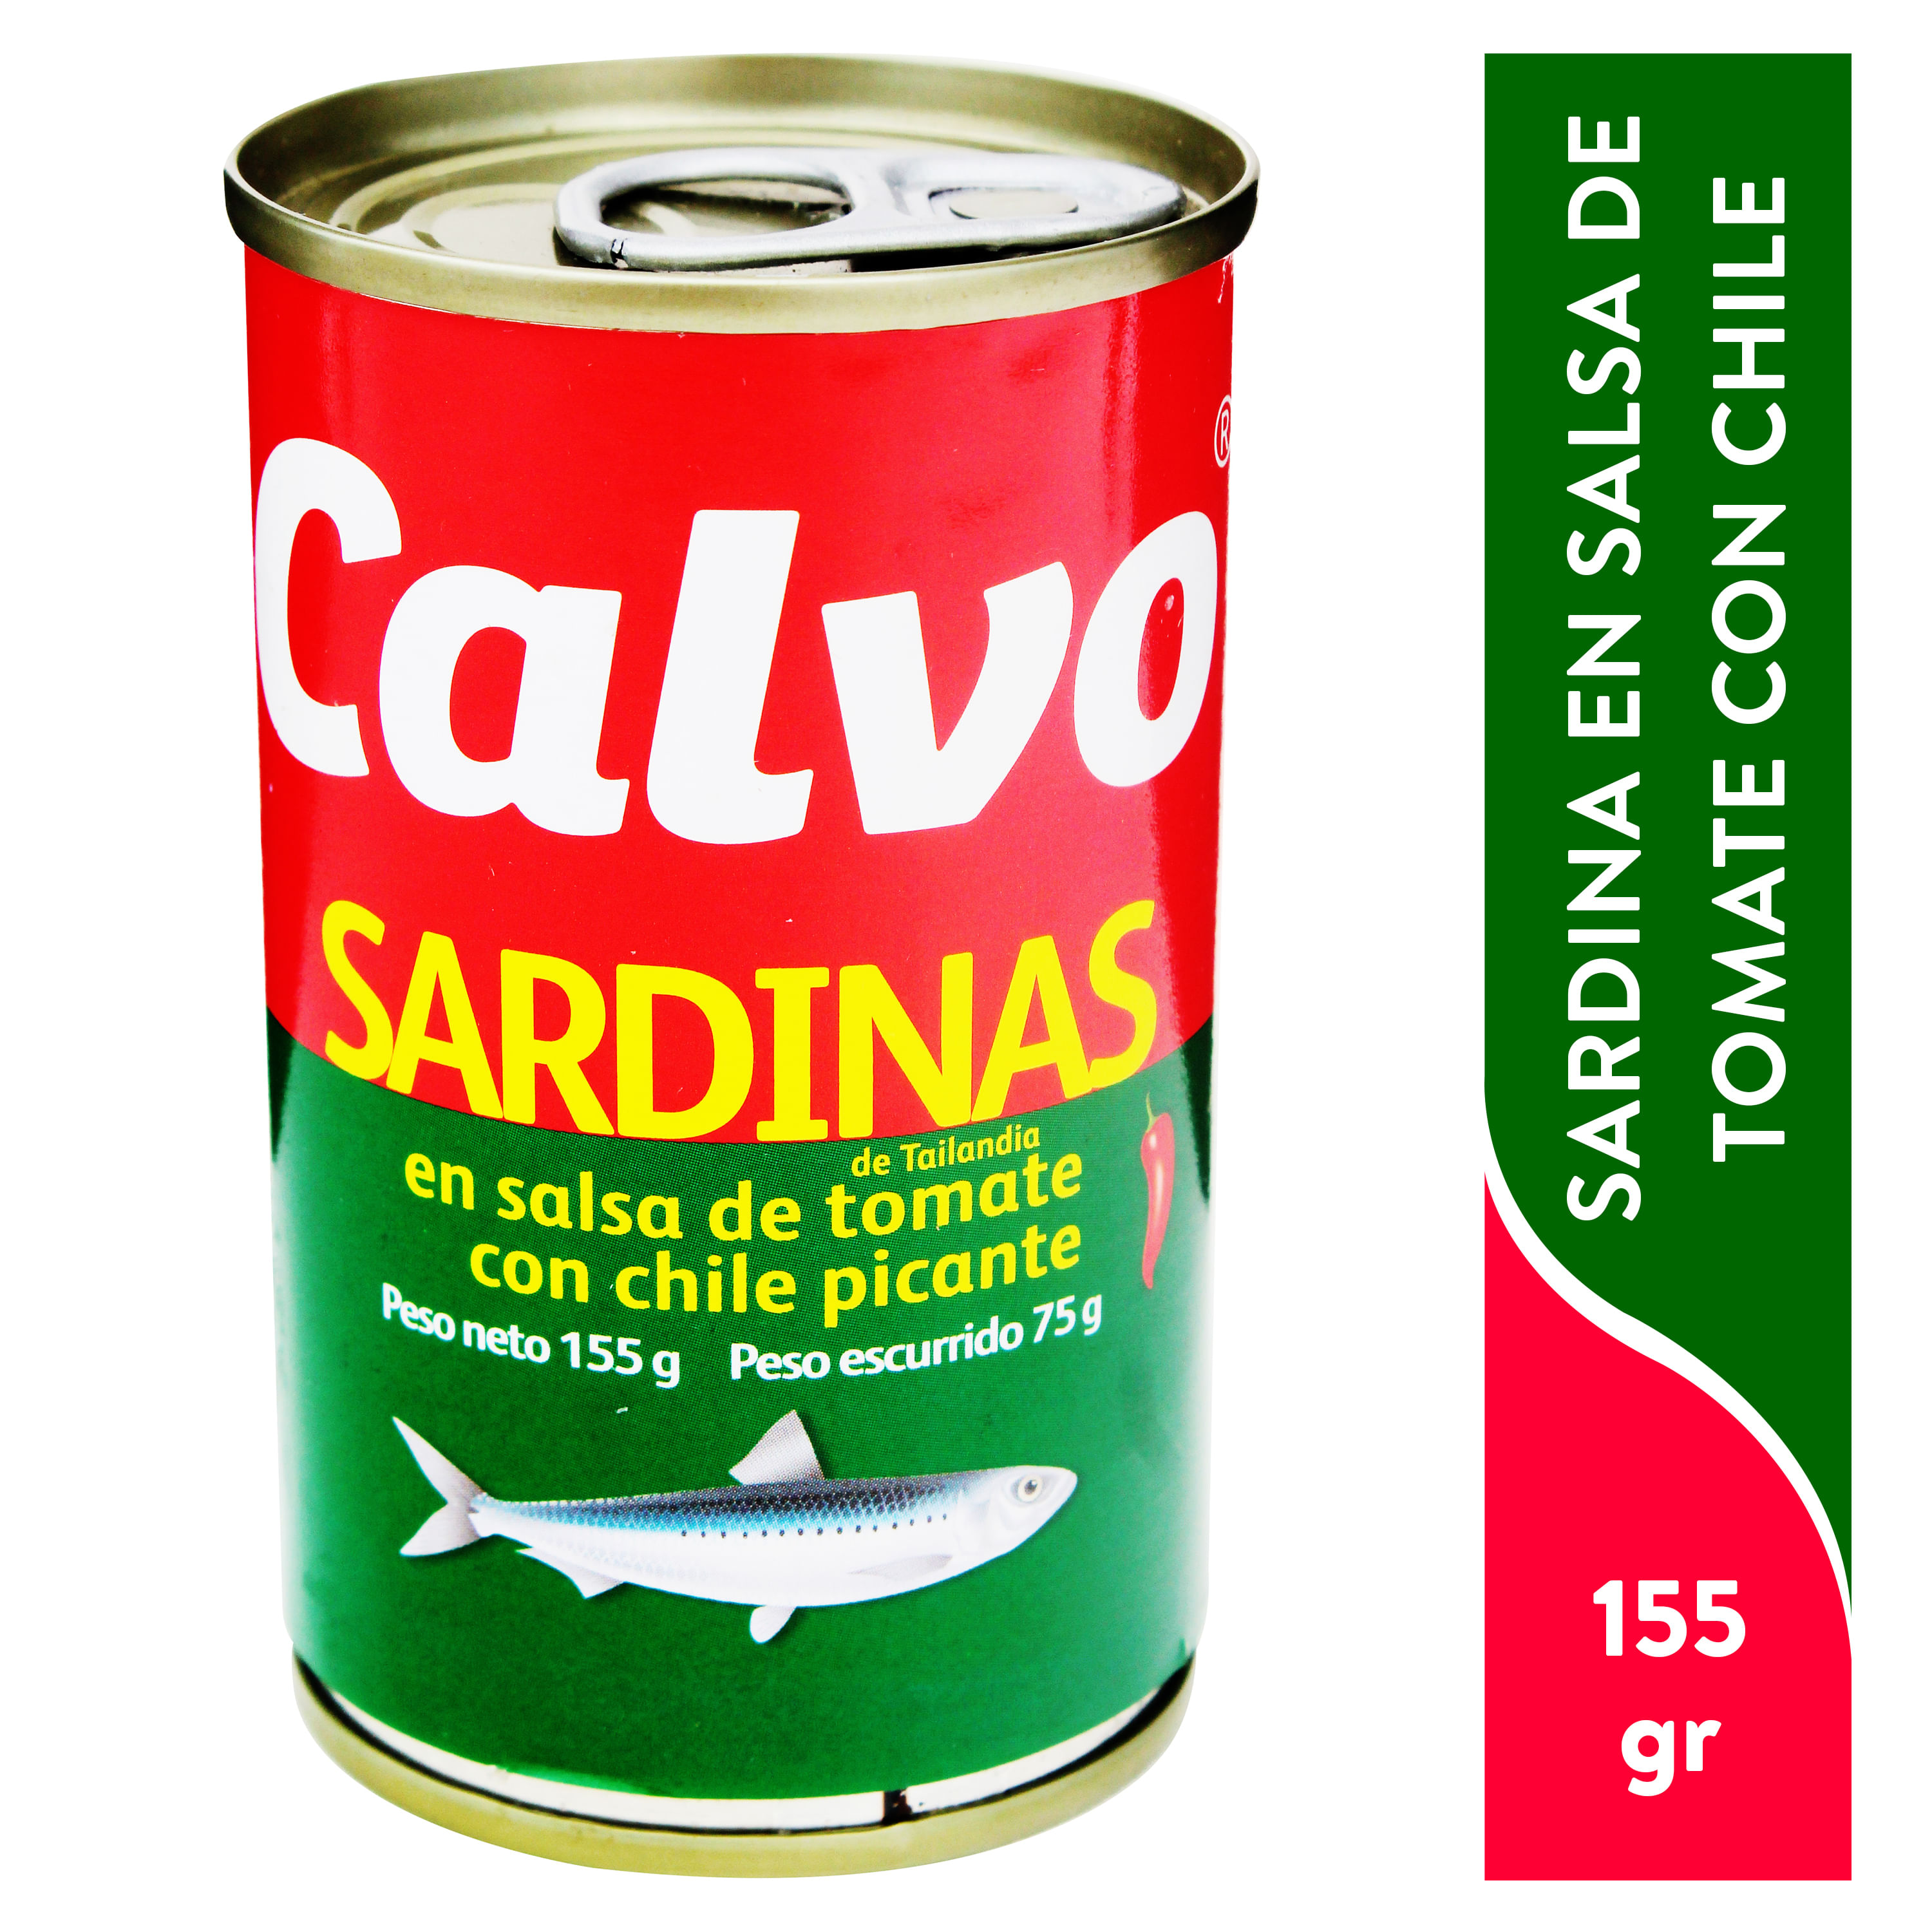 Sardina-Calvo-Salsa-Picante-155gr-1-6536